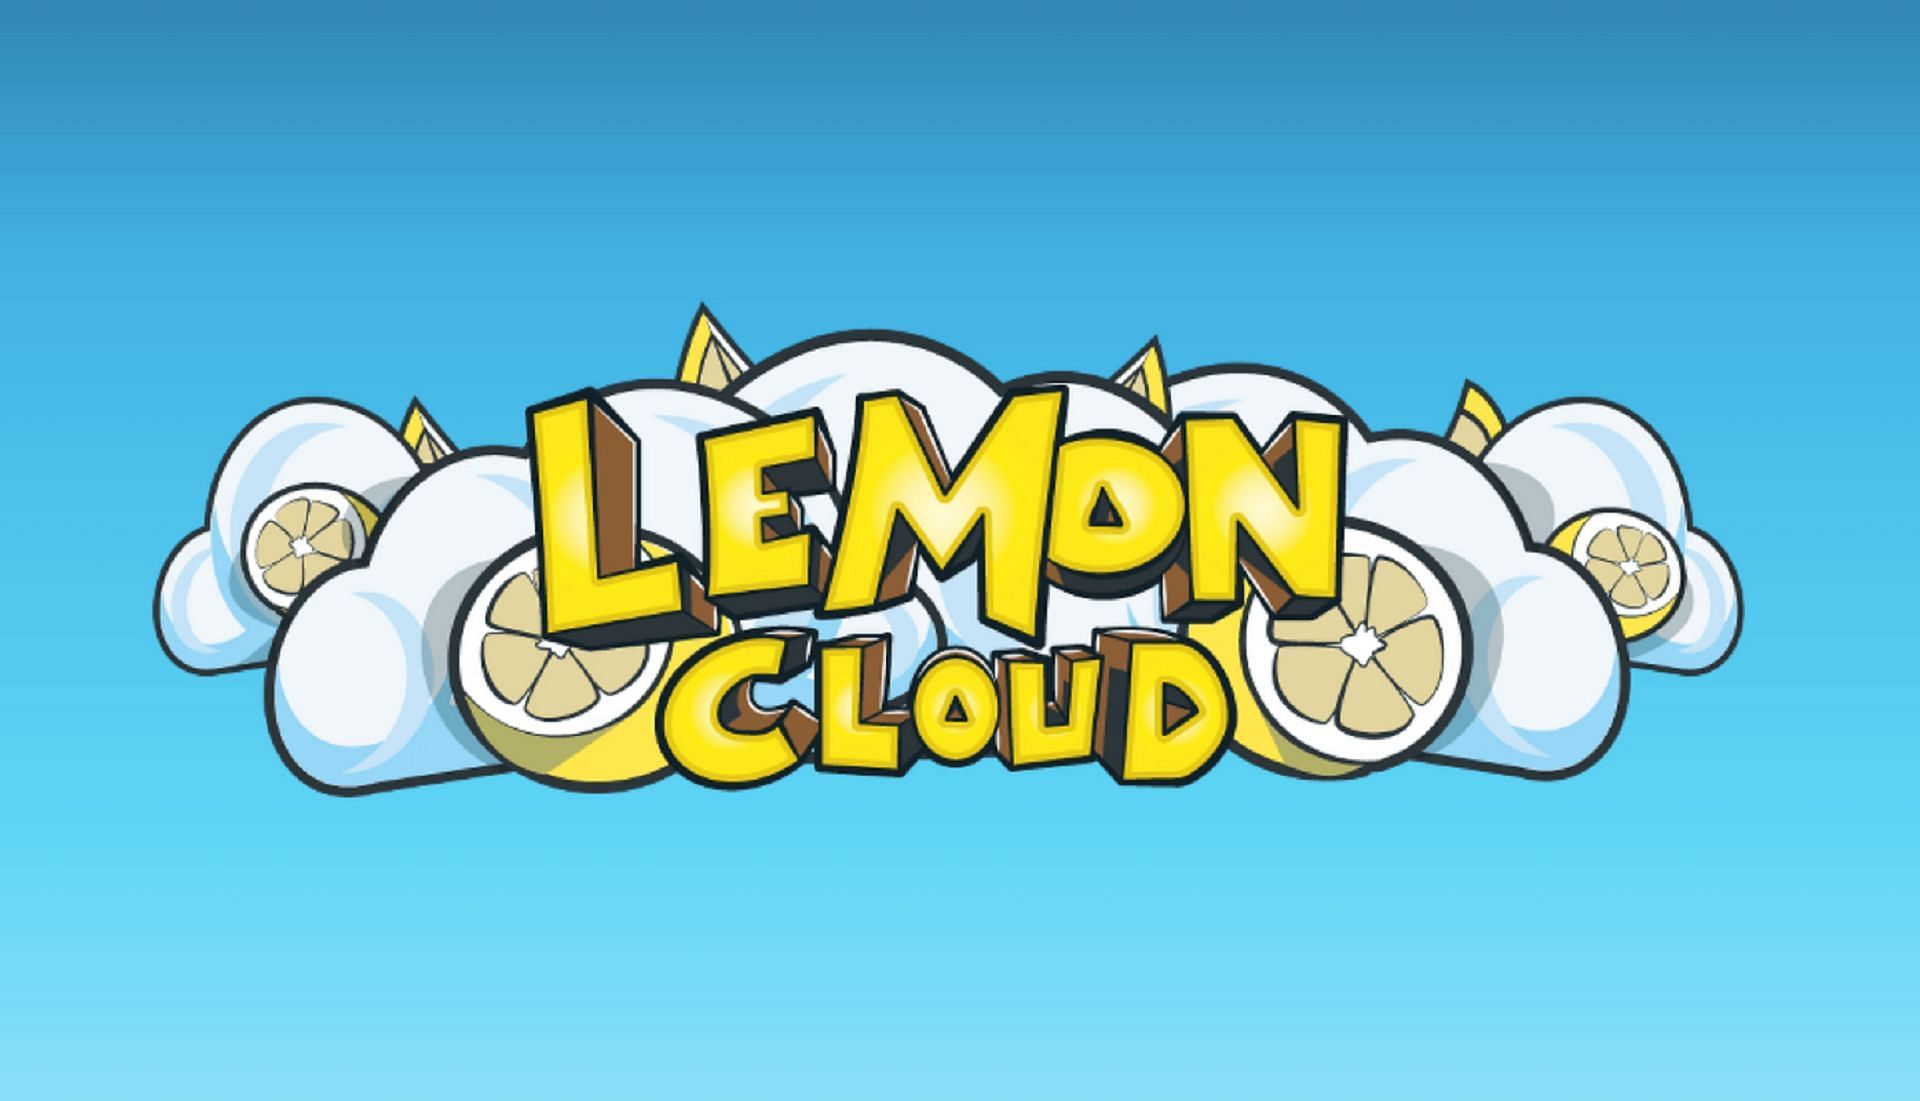 Lemoncloud&#039;s official logo (Image via Lemoncloud.org)